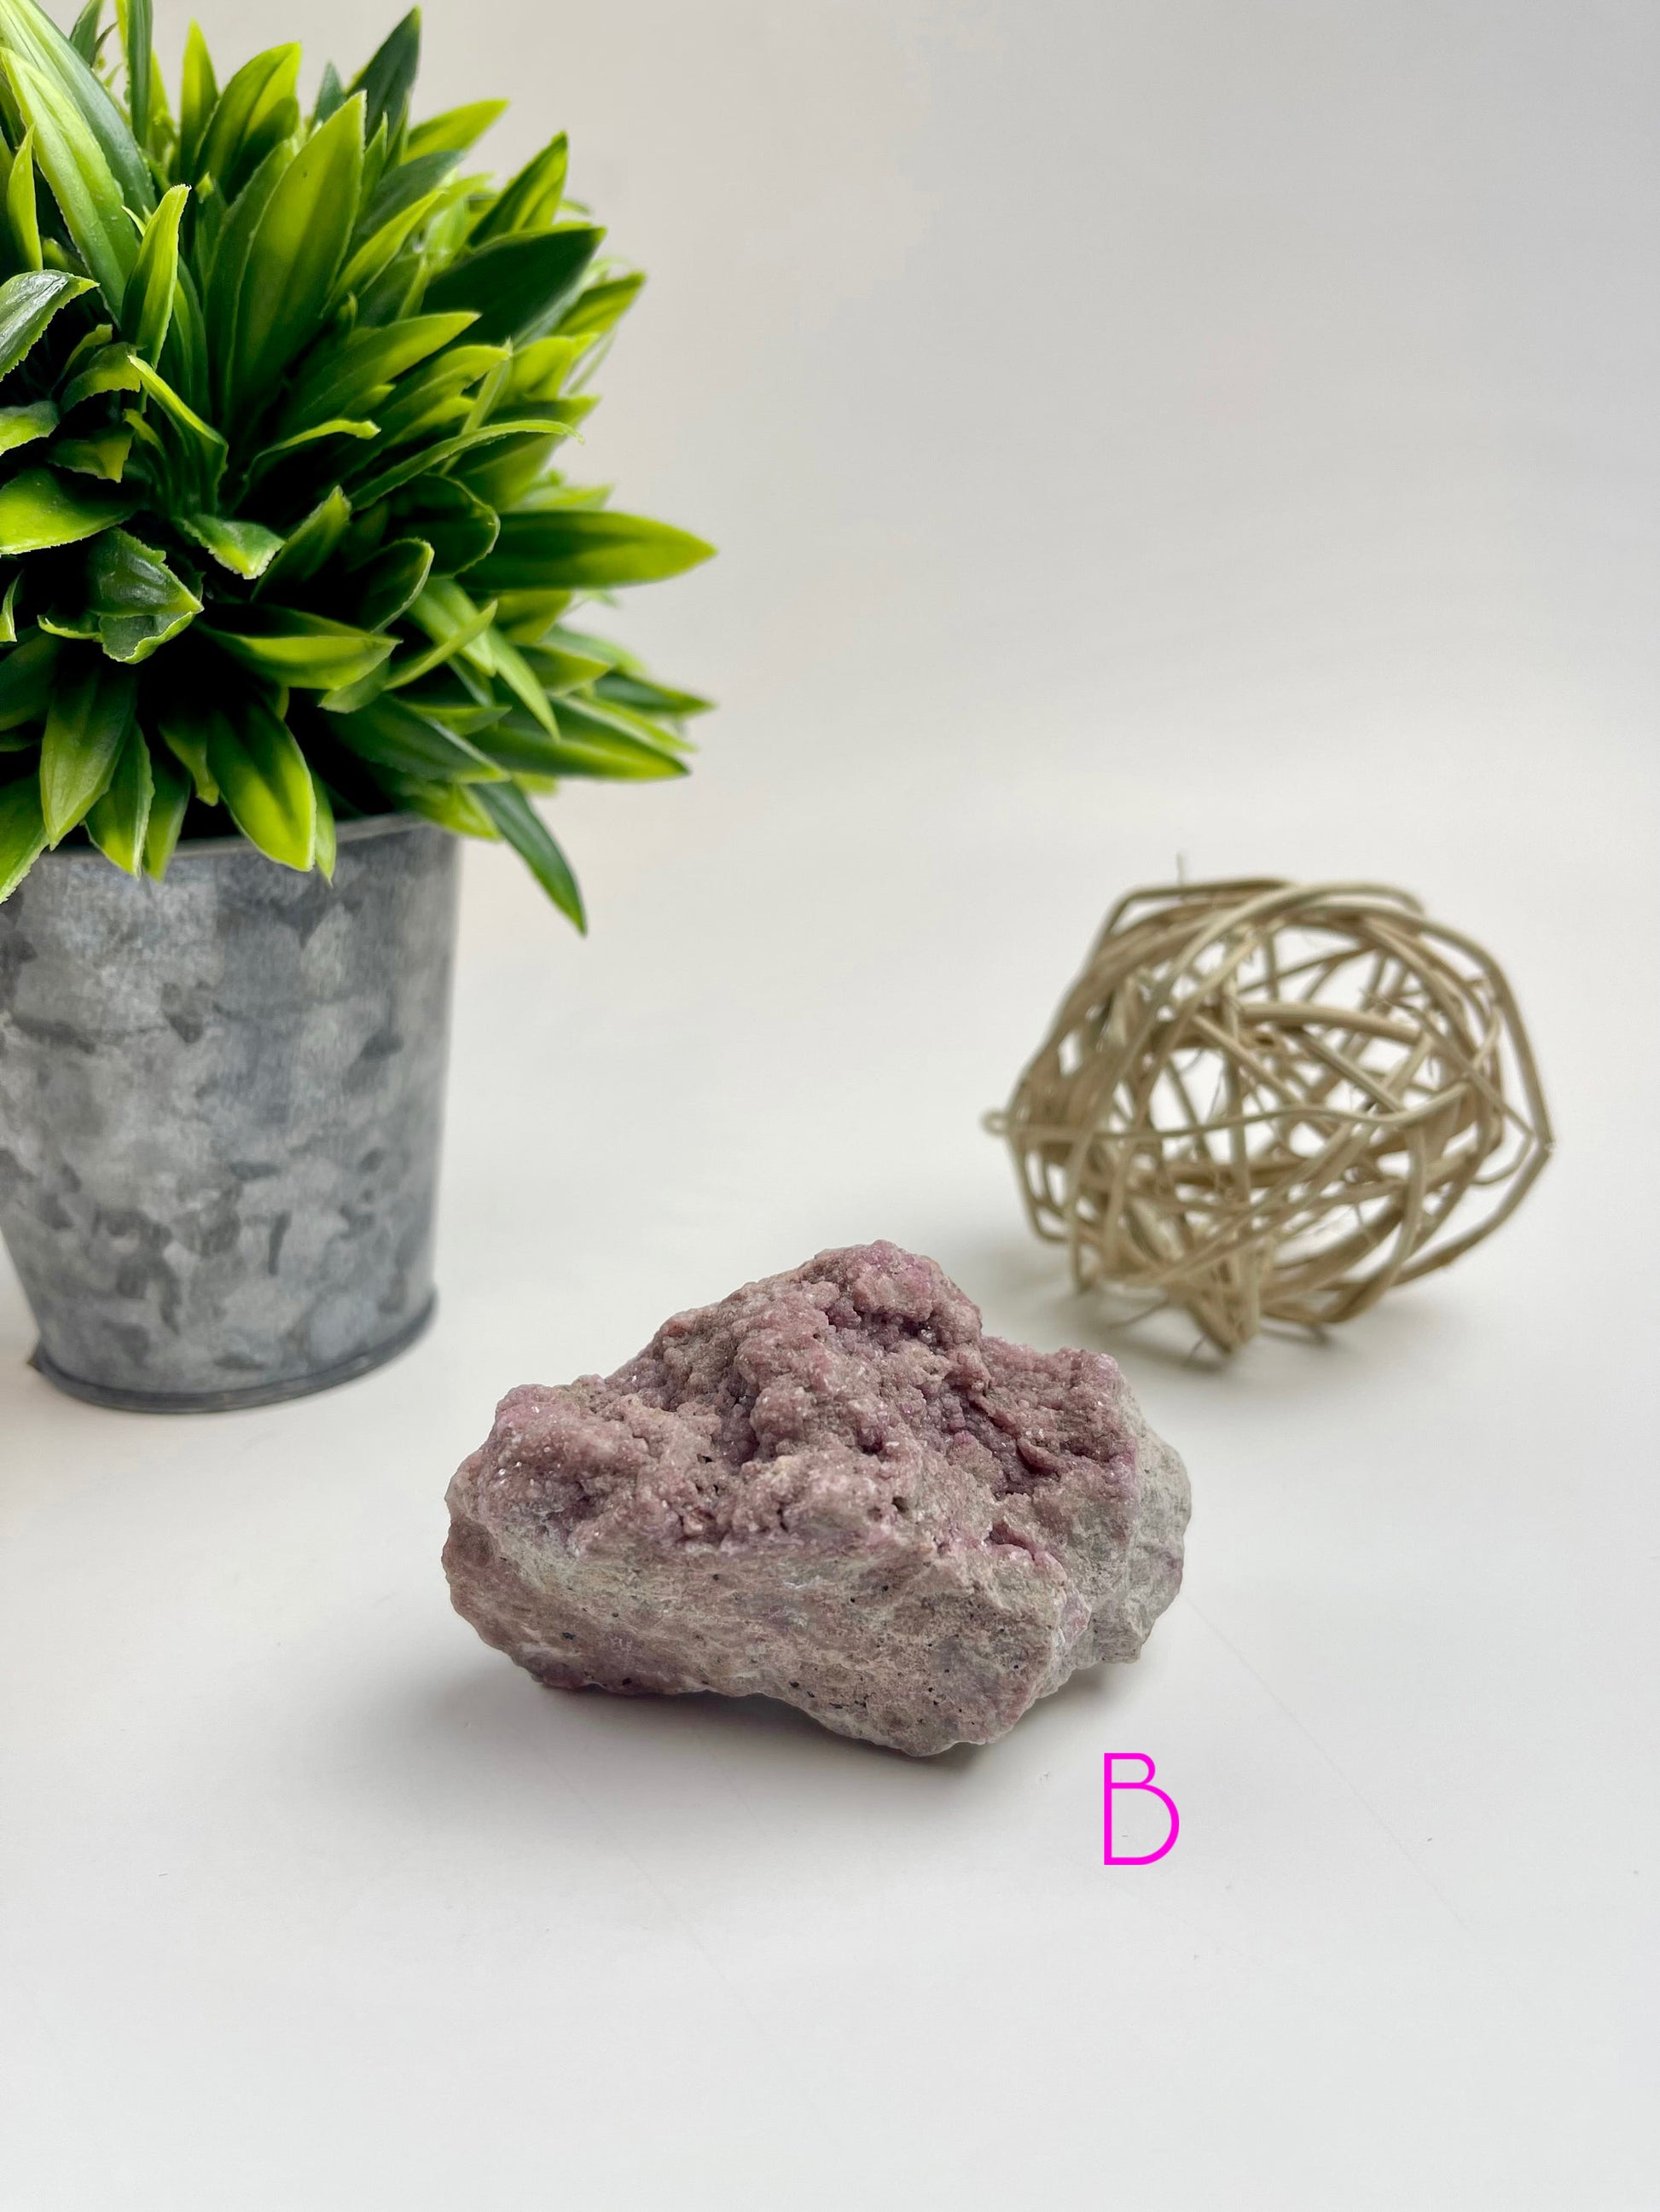 Pink Cobalto-Calcite Raw Specimen B